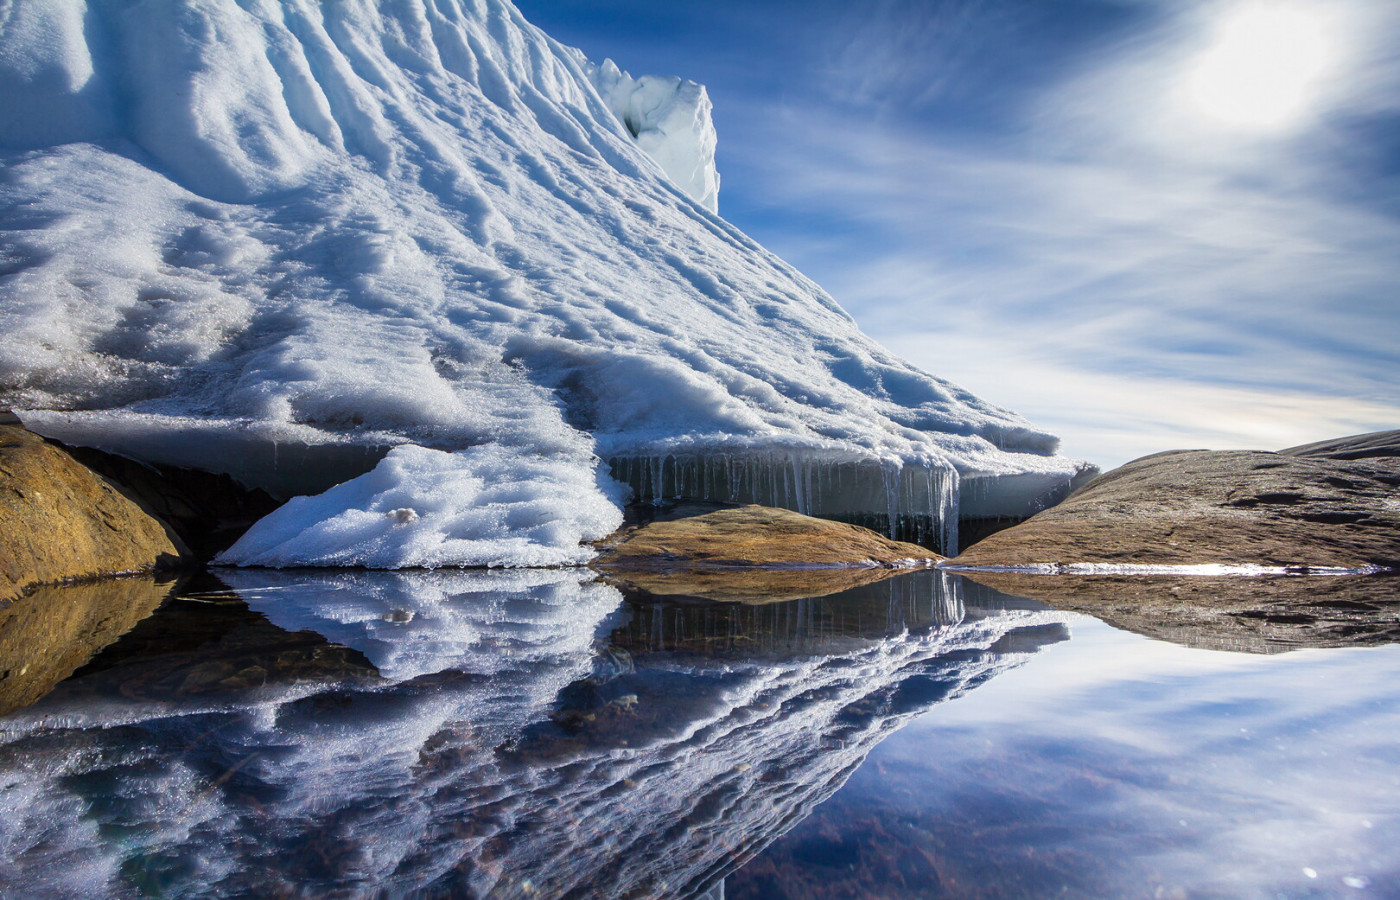 Айсберг в Антарктиде и его отражение в воде. Фото: Дмитрий Резвов, участник конкурса РГО 